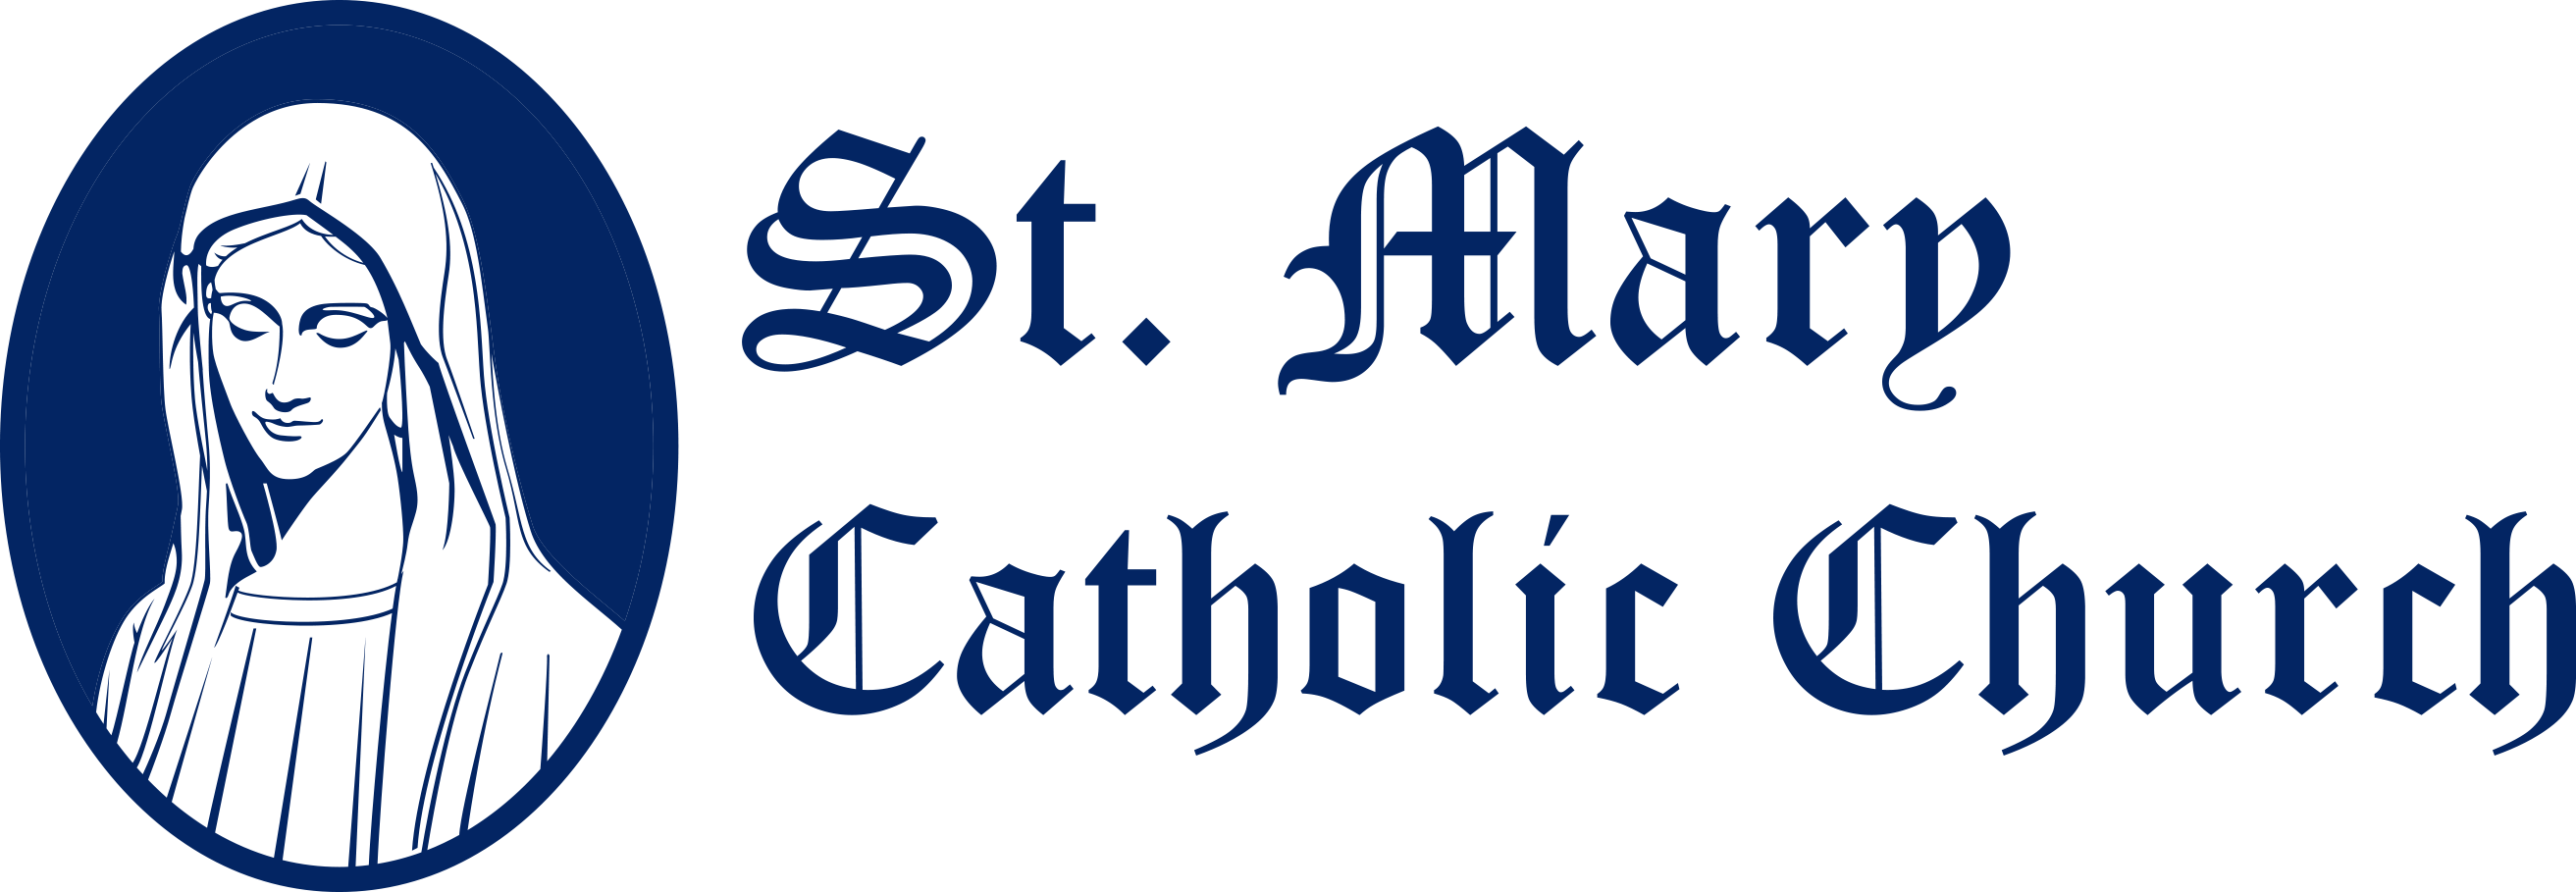 Catholic Logos